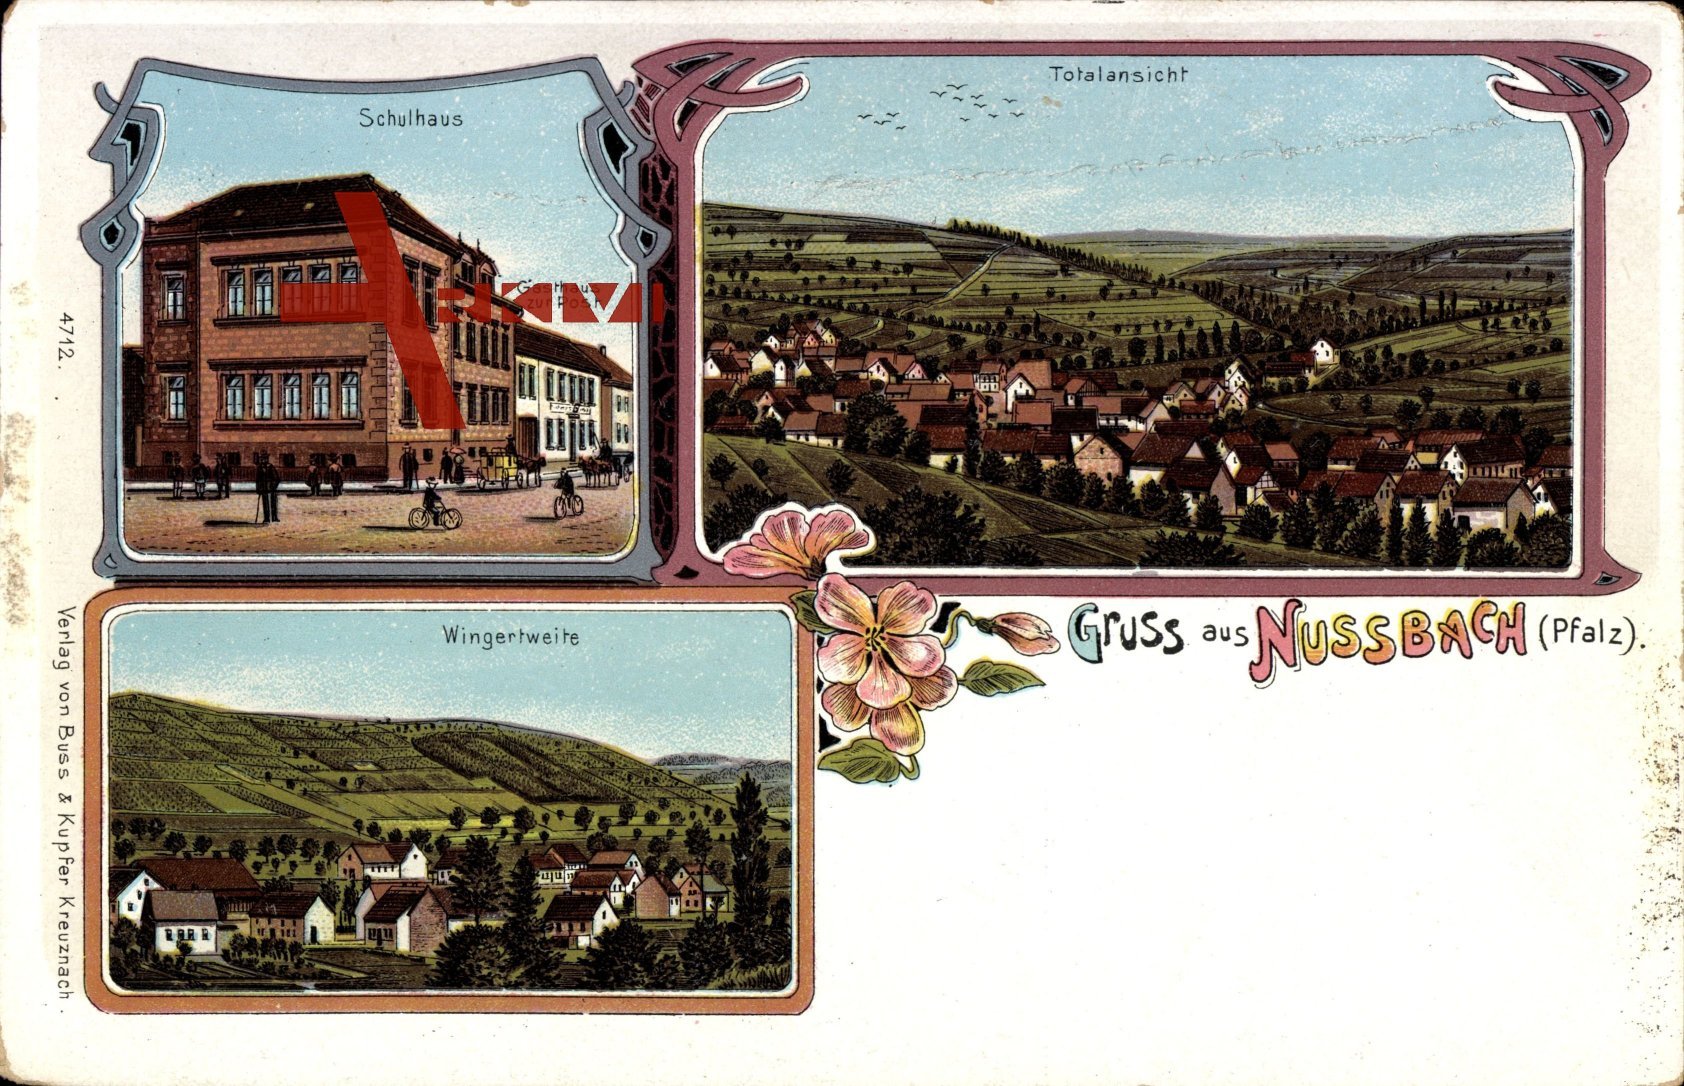 Nussbach Pfalz, Totalansicht, Schulhaus, Wingertweite